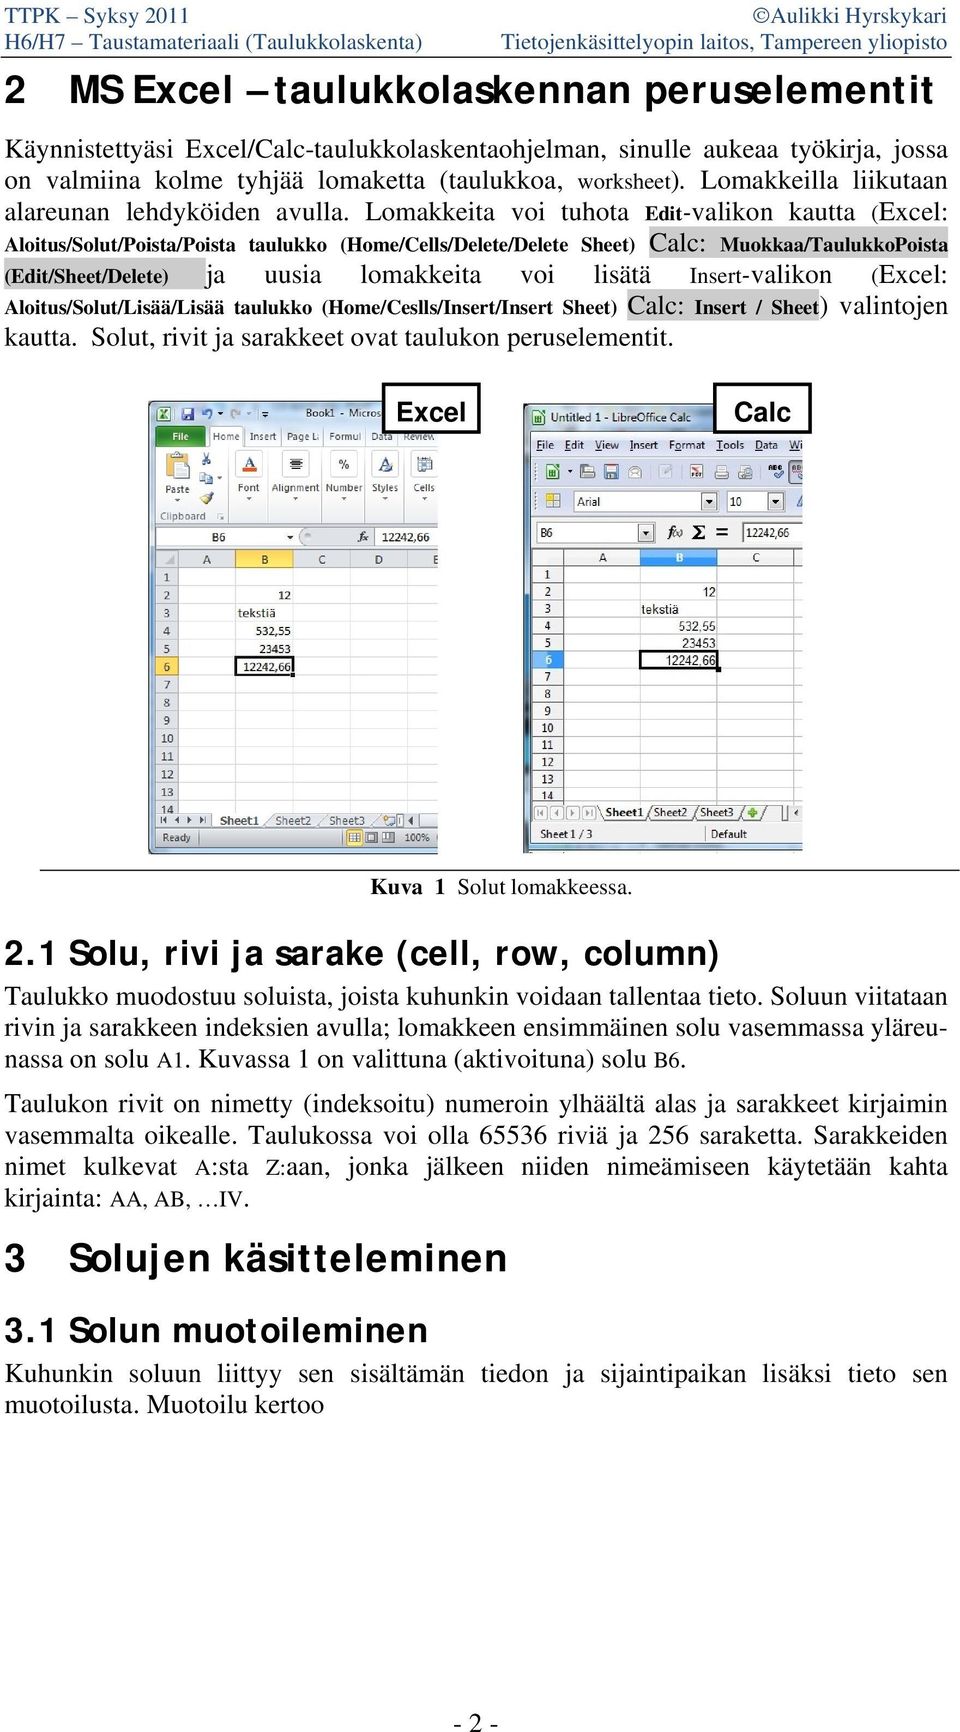 Lomakkeita voi tuhota Edit-valikon kautta (Excel: Aloitus/Solut/Poista/Poista taulukko (Home/Cells/Delete/Delete Sheet) Calc: Muokkaa/TaulukkoPoista (Edit/Sheet/Delete) ja uusia lomakkeita voi lisätä